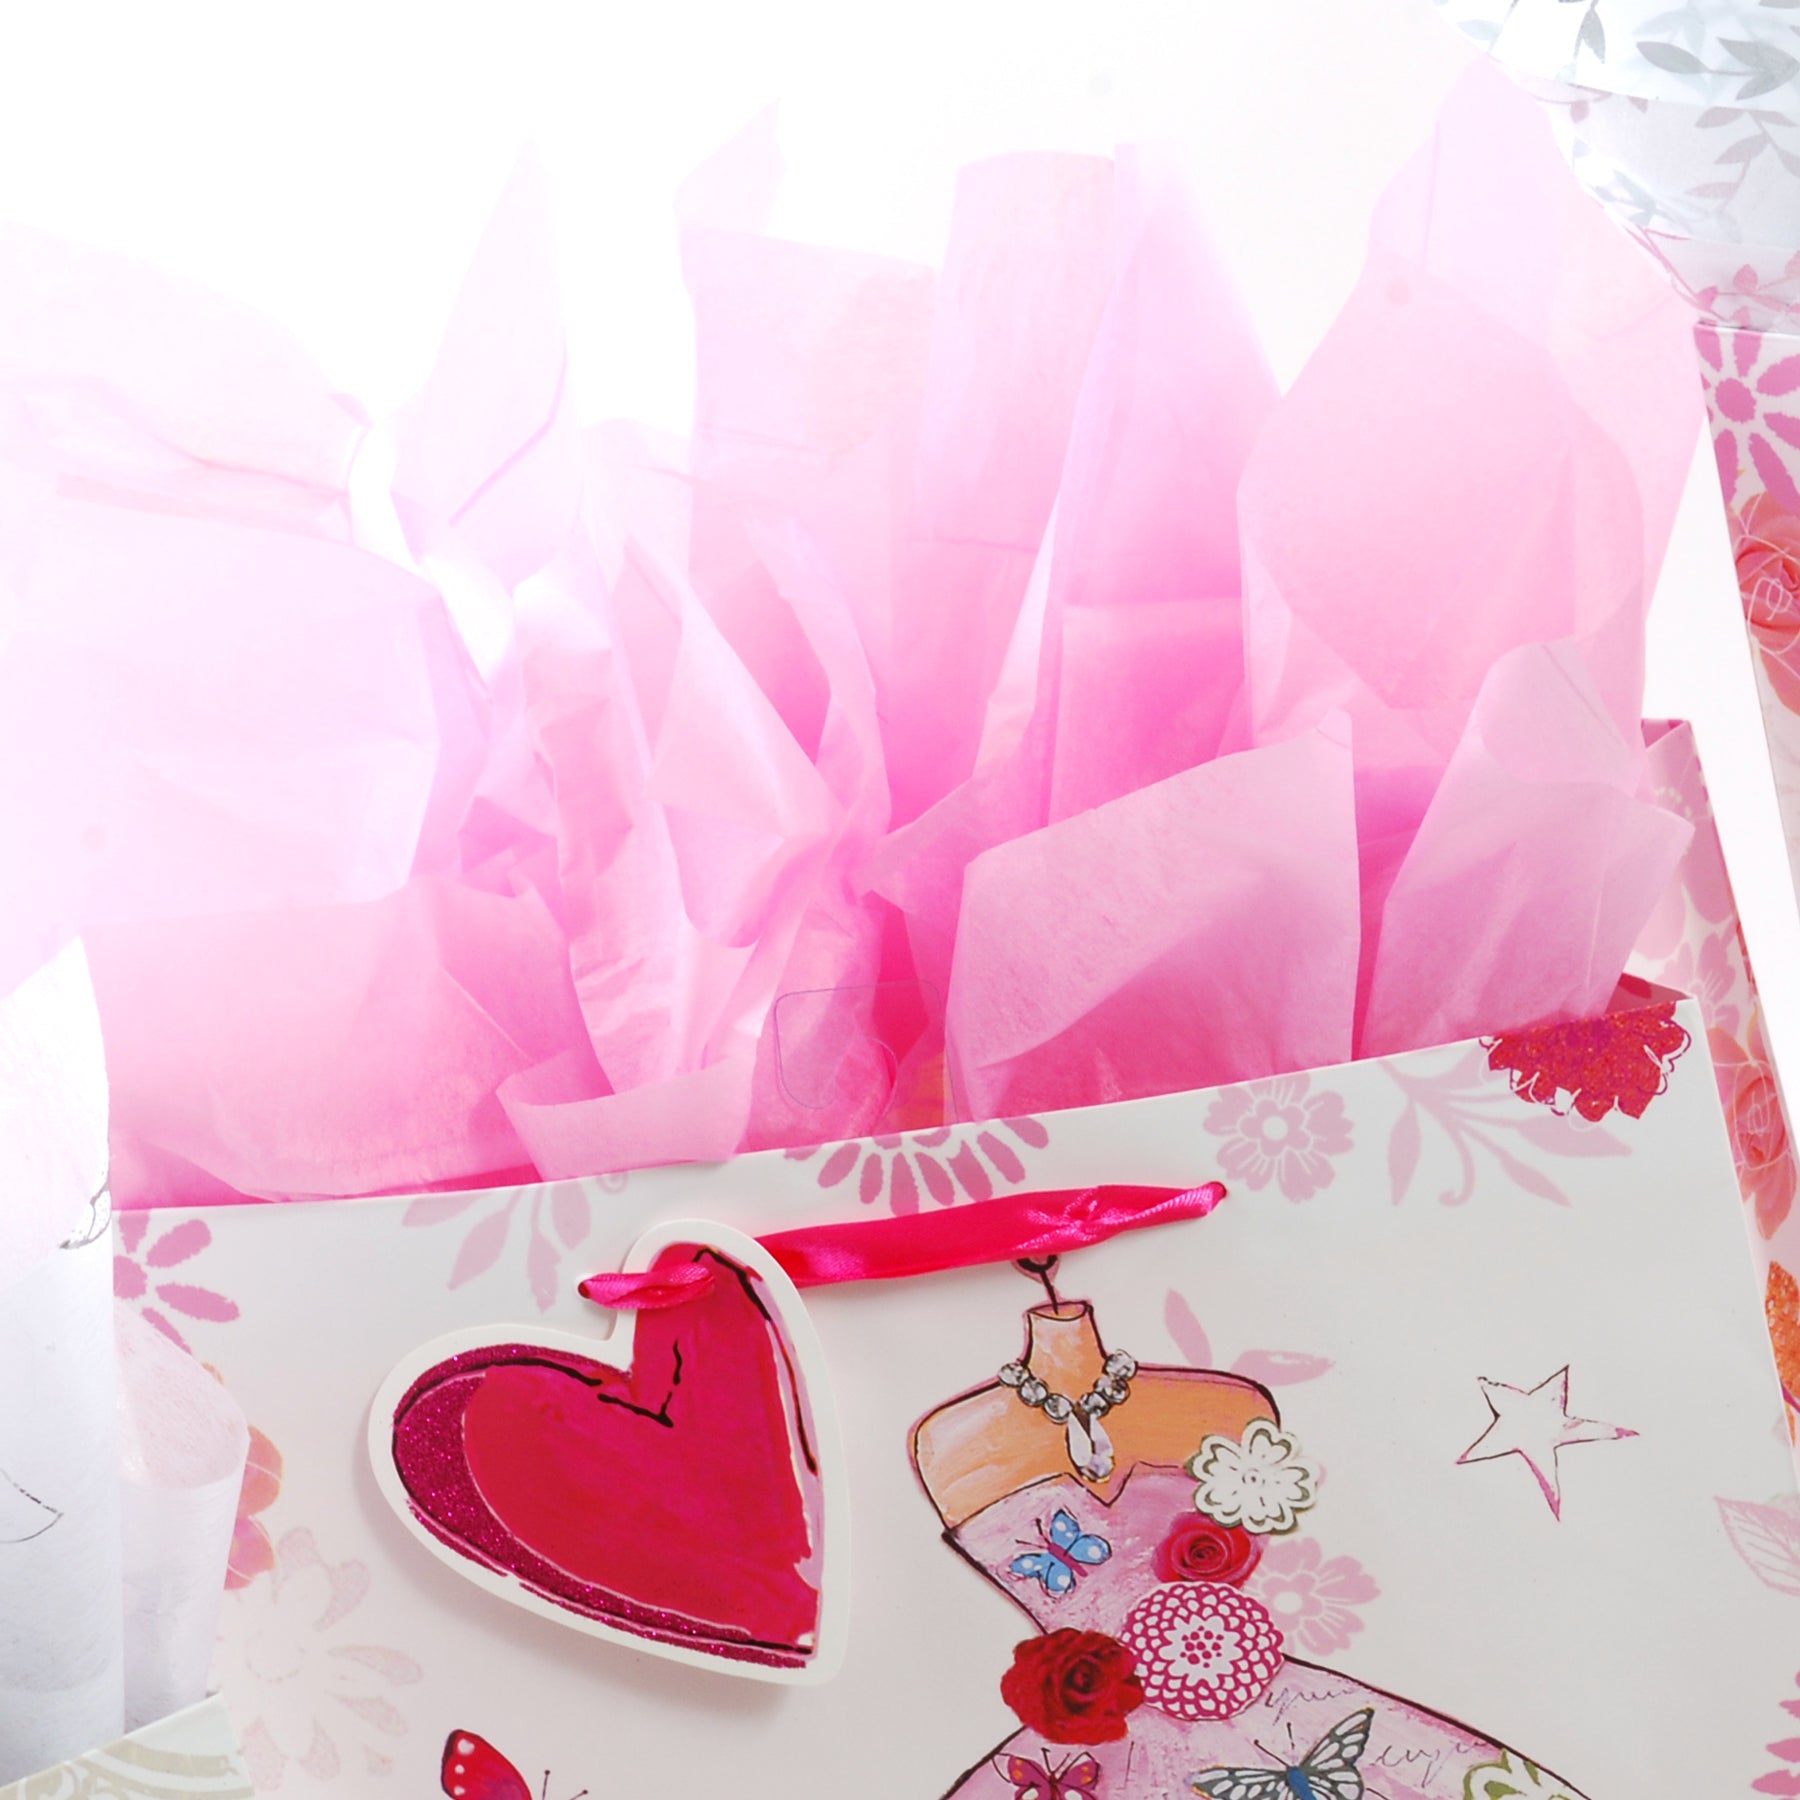 Valentine's Day Tissue Paper in Valentine's Day Gift Wrap 